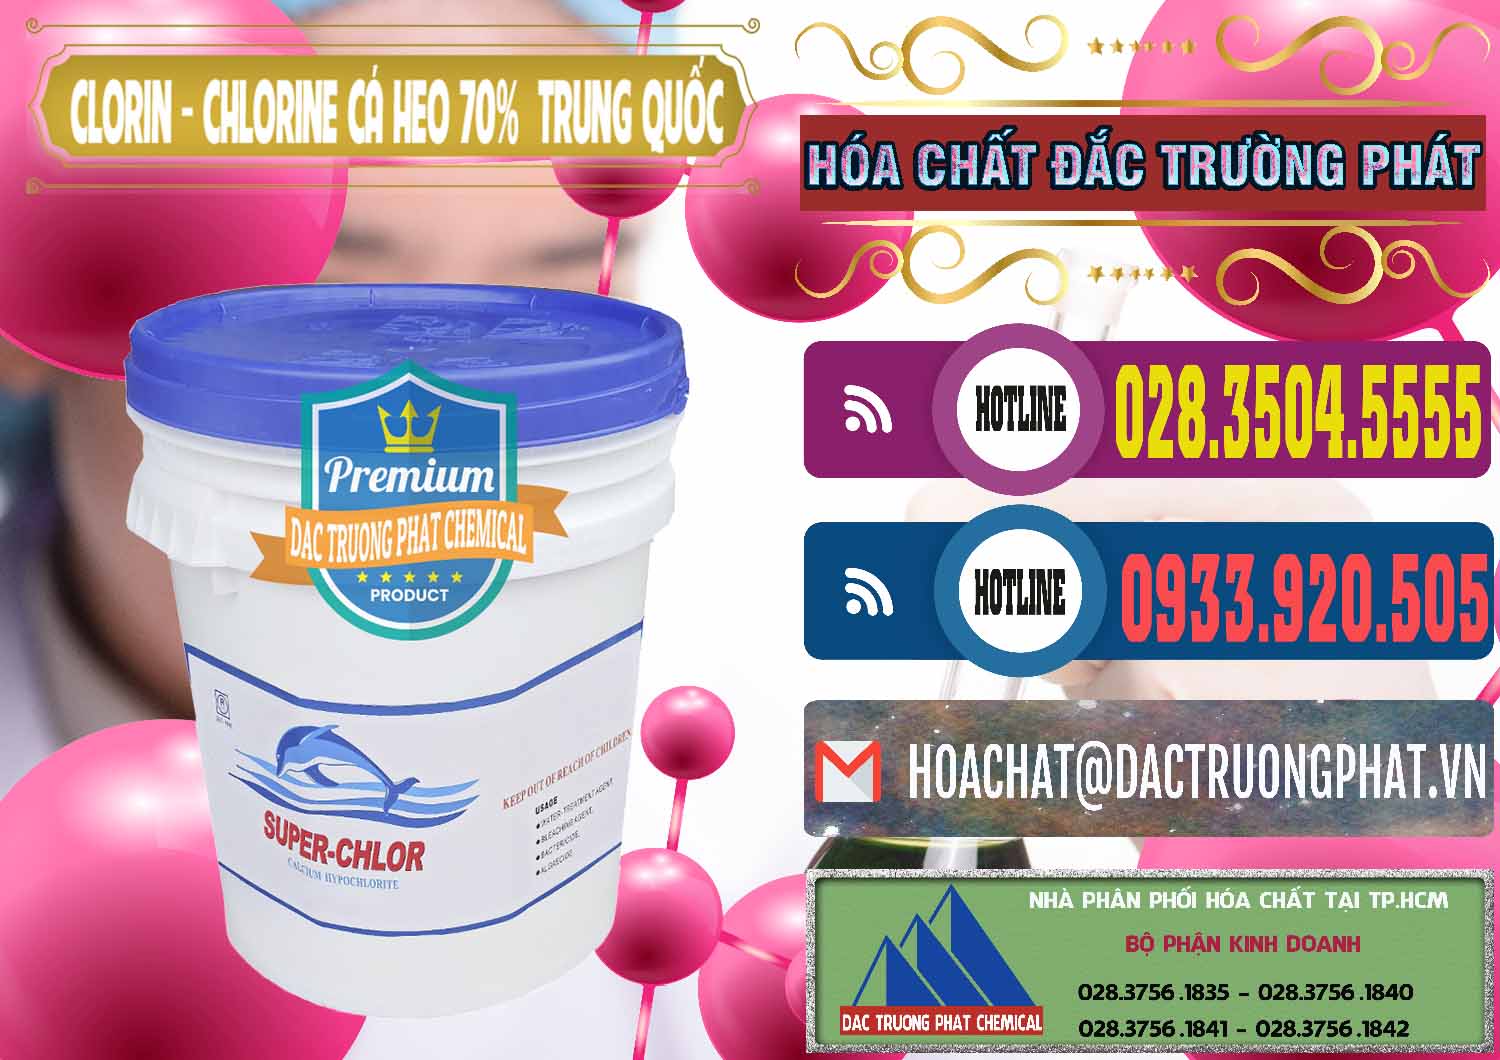 Nơi cung cấp và bán Clorin - Chlorine Cá Heo 70% Super Chlor Nắp Xanh Trung Quốc China - 0209 - Đơn vị bán và cung cấp hóa chất tại TP.HCM - muabanhoachat.com.vn